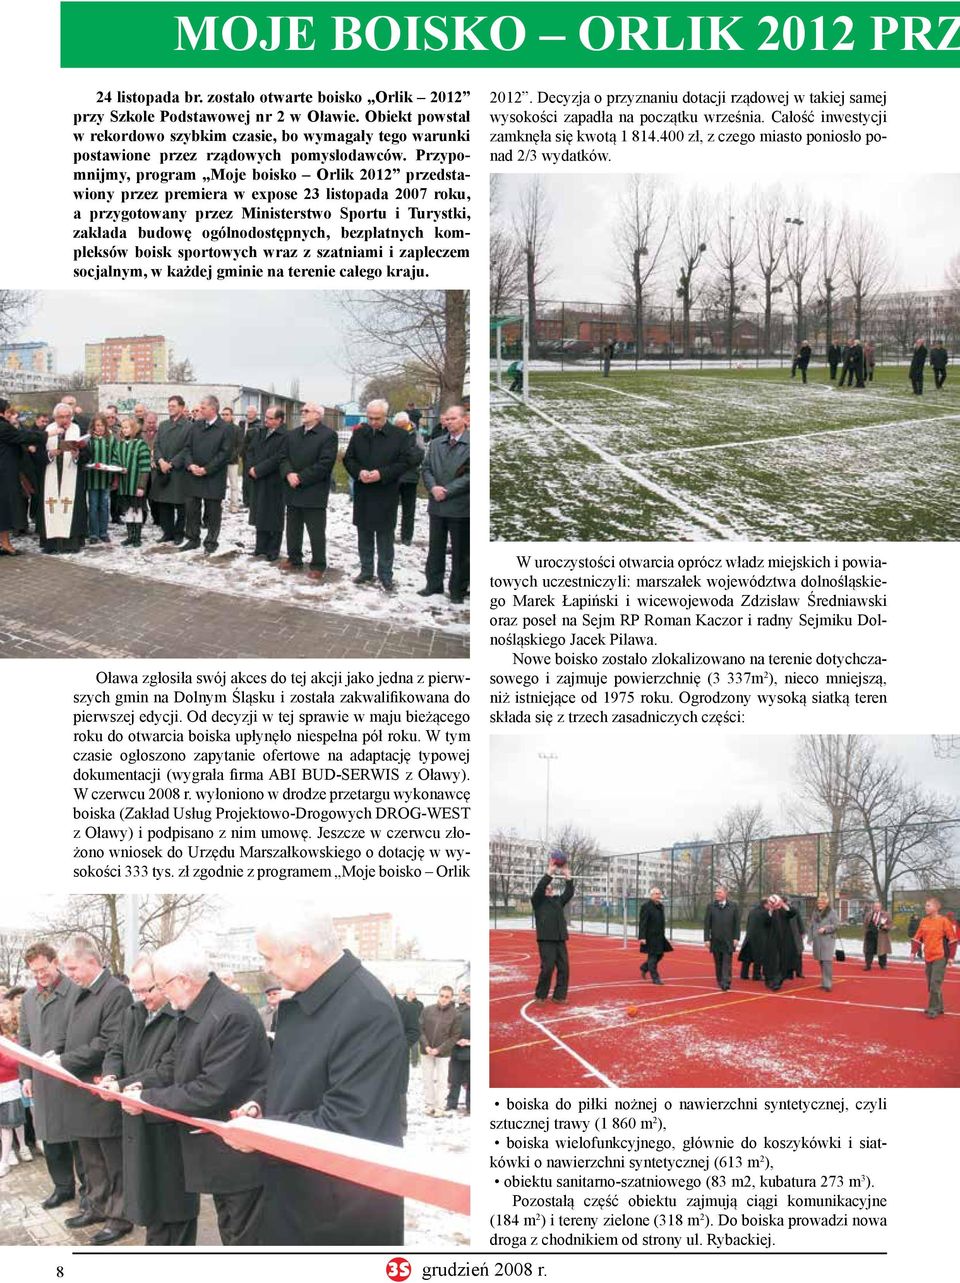 Przypomnijmy, program Moje boisko Orlik 2012 przedstawiony przez premiera w expose 23 listopada 2007 roku, a przygotowany przez Ministerstwo Sportu i Turystki, zakłada budowę ogólnodostępnych,